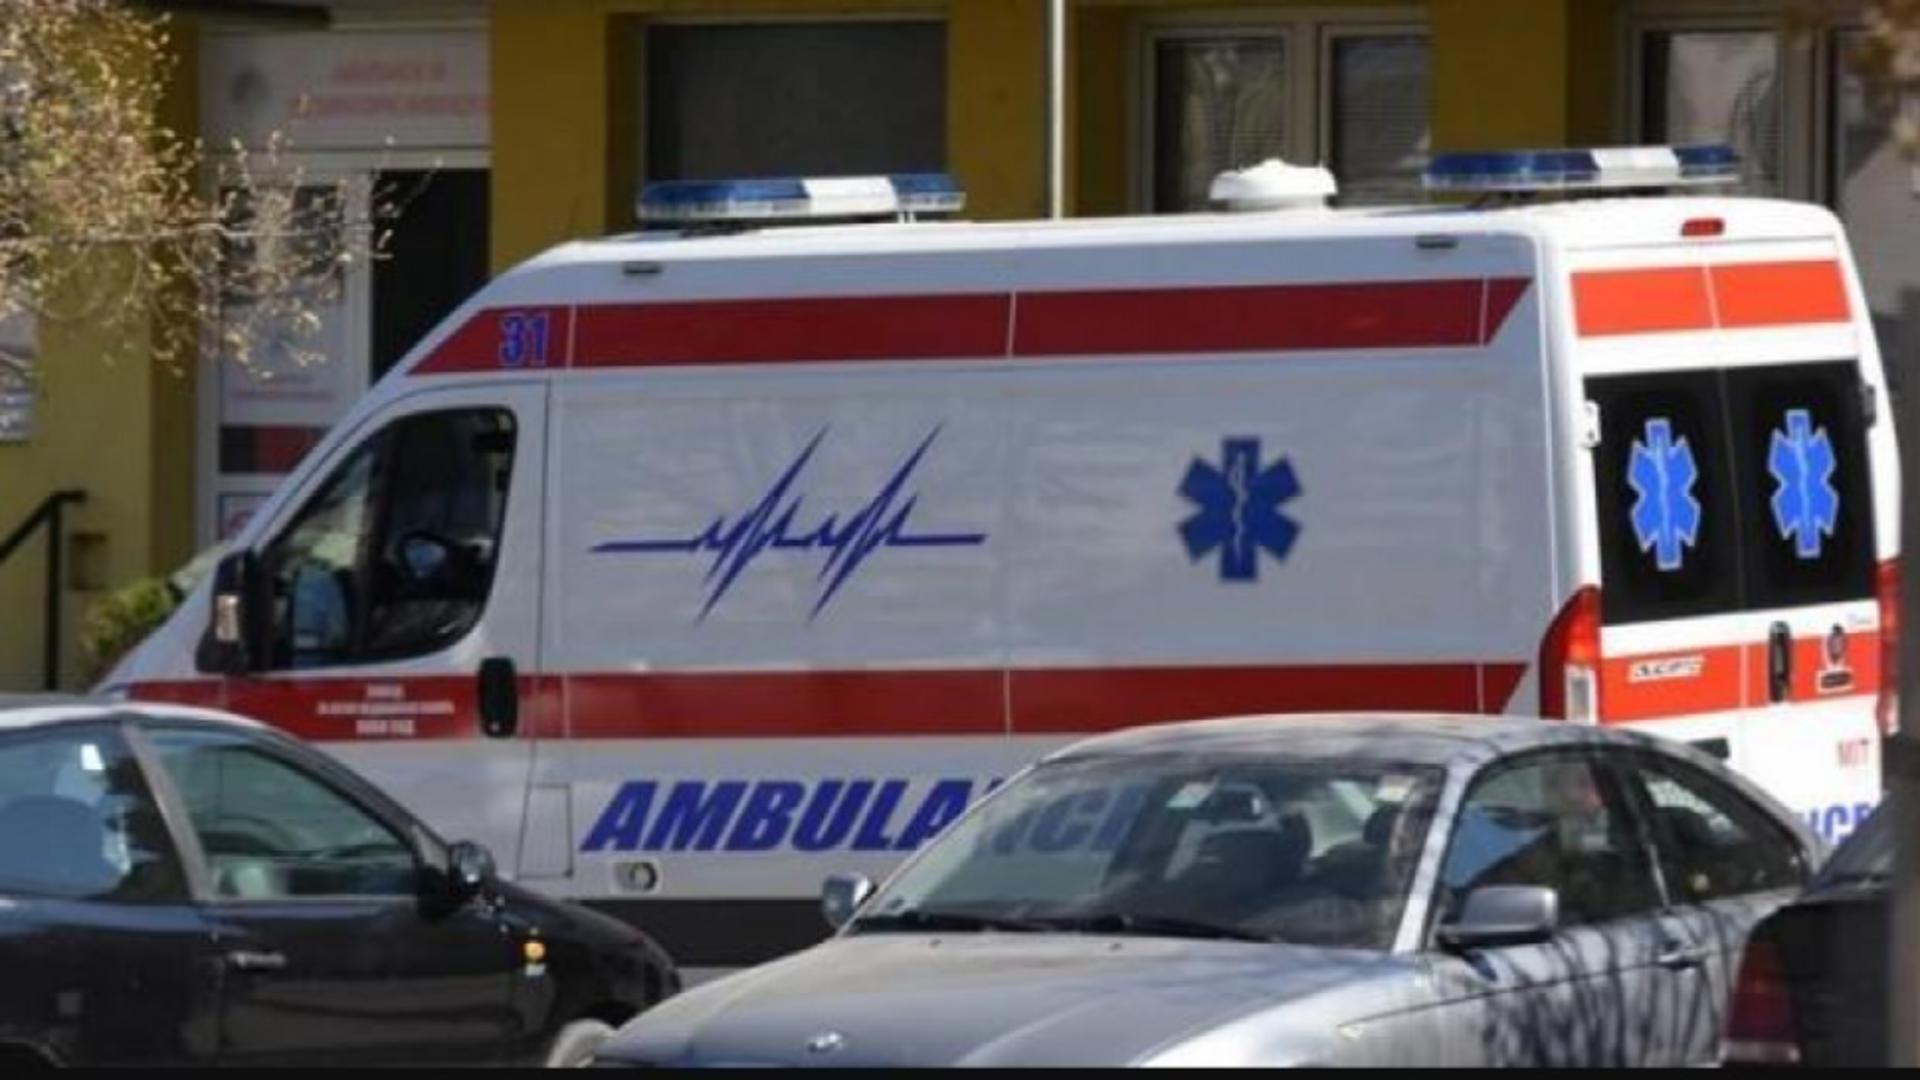 Ambulanță/ Foto: FB